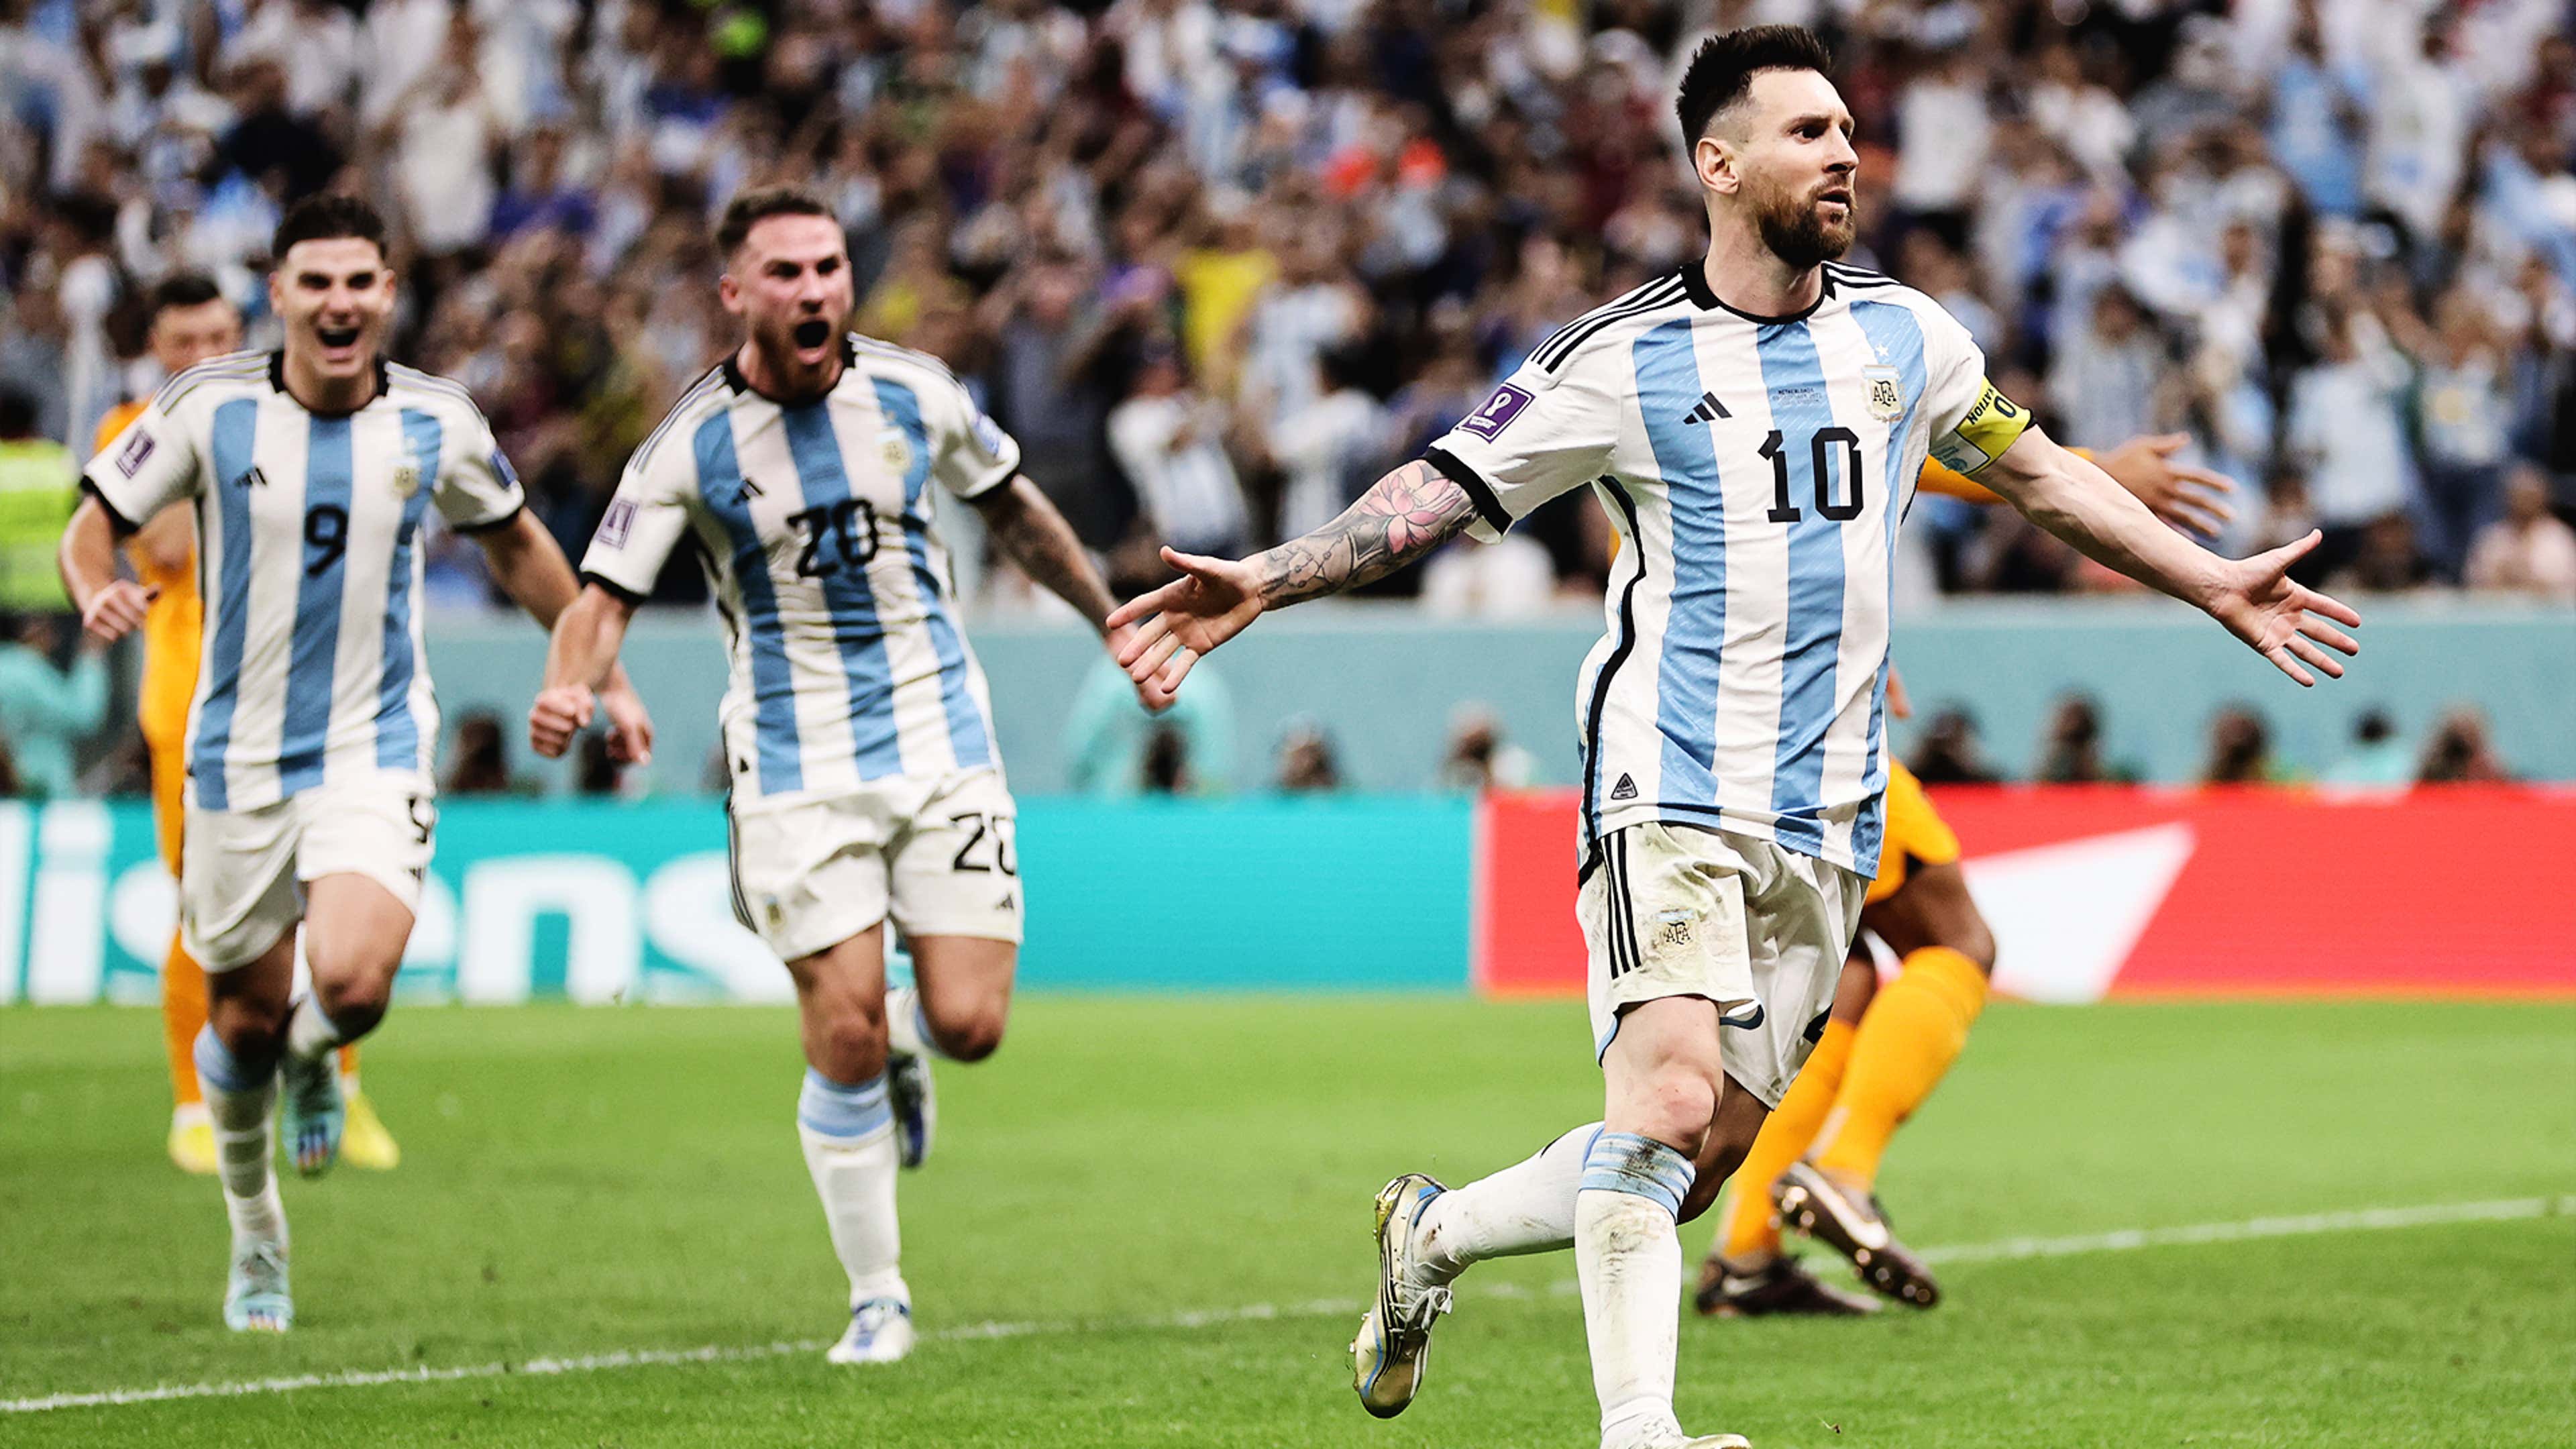 Recorde atingido por Messi após superar Pelé é (apenas) um fato